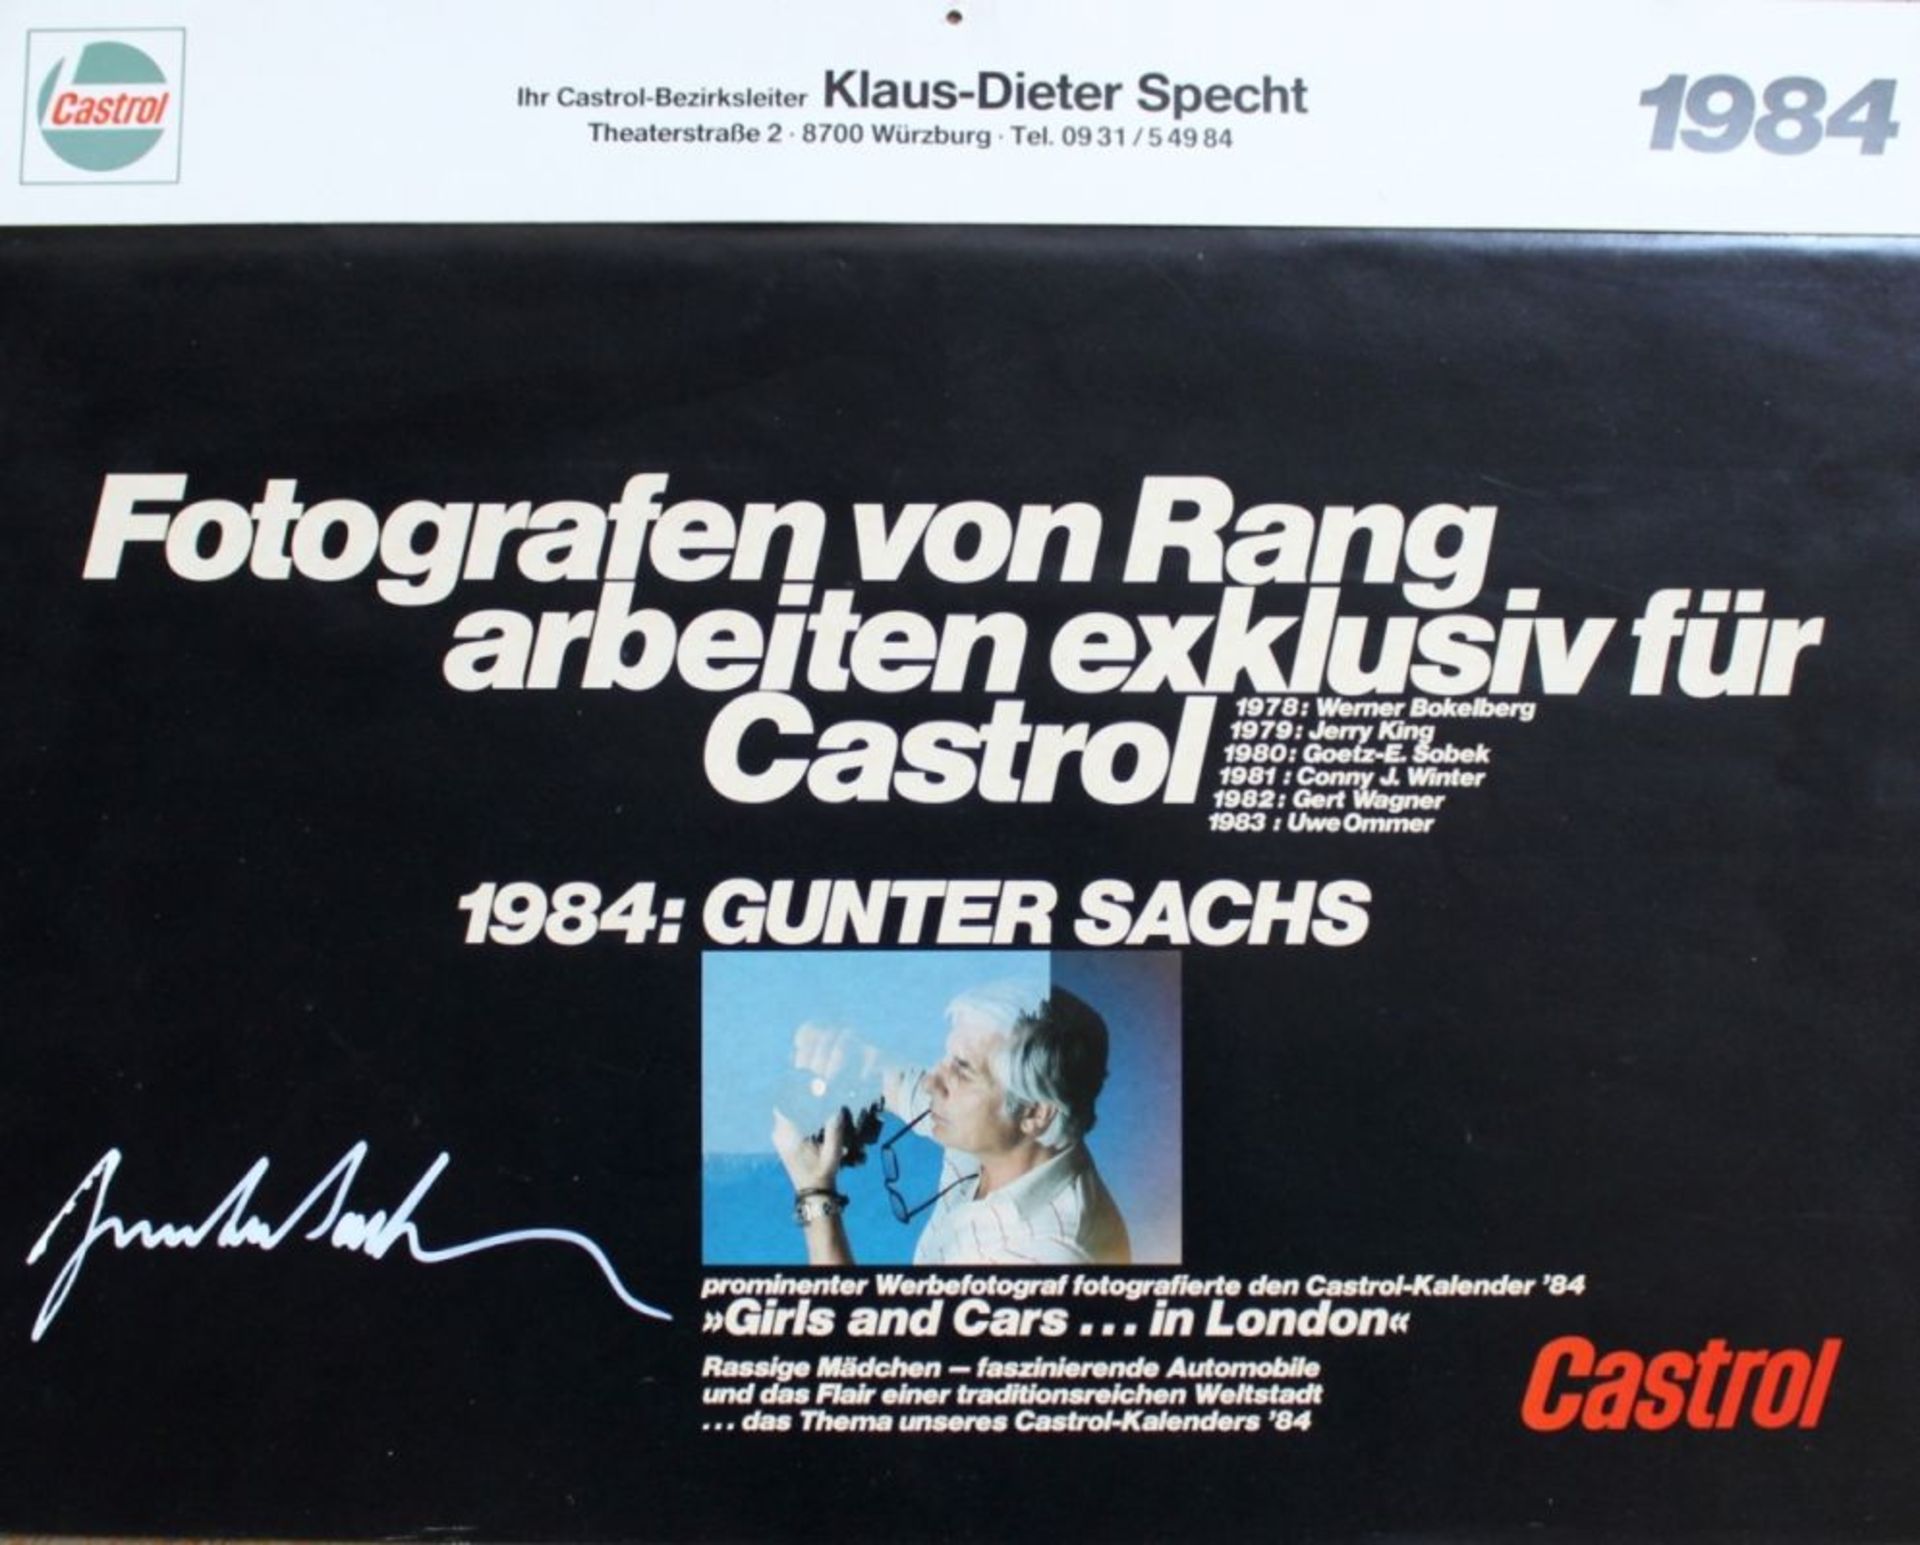 Castrol-Kalender 1984: Gunter Sachs handsigniert, beiliegend: Schreiben Sekretariat Gunter Sachs